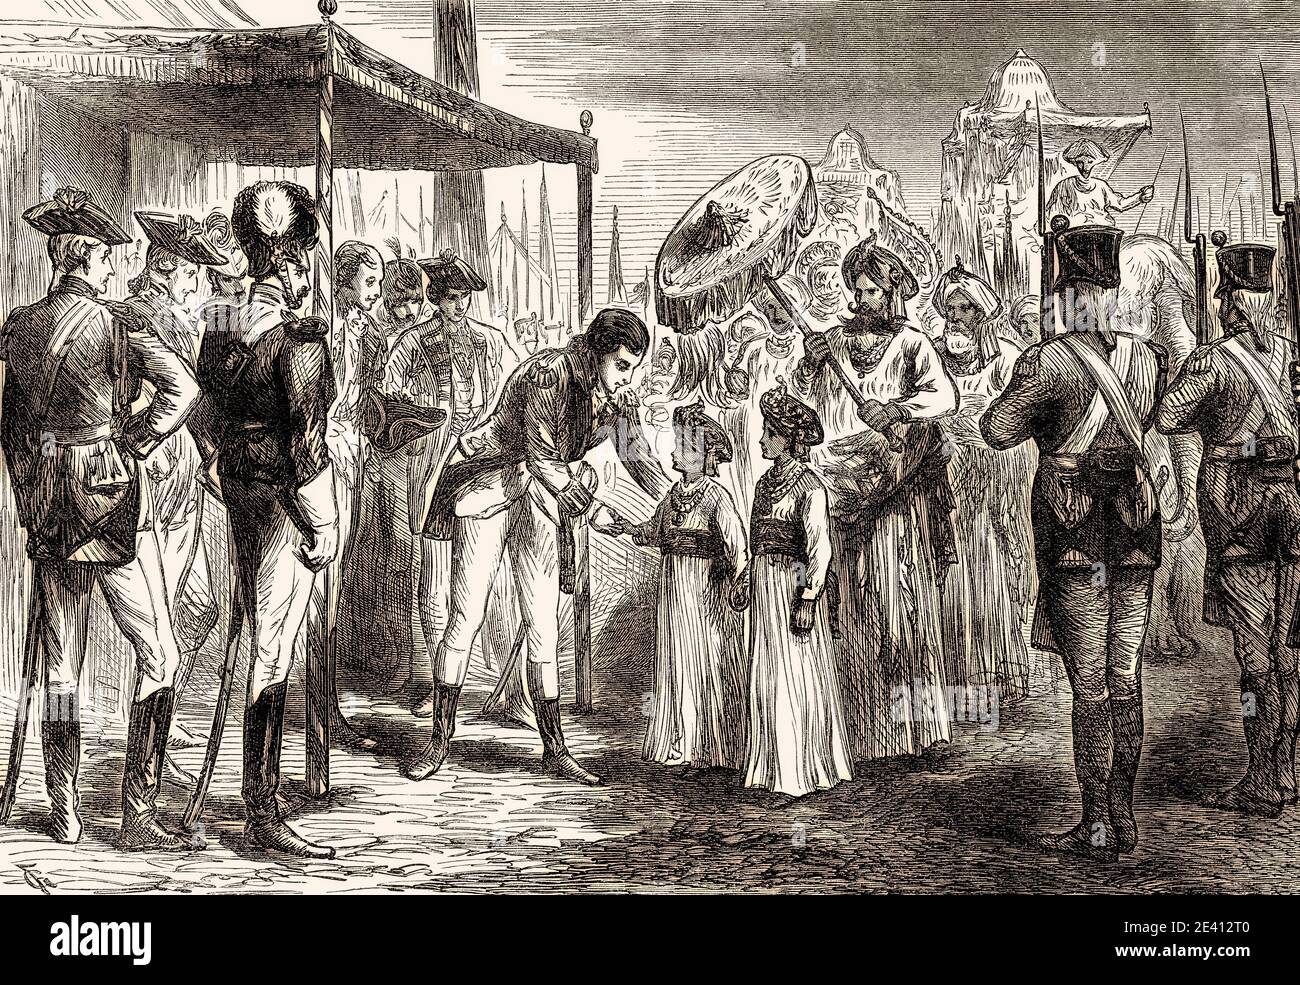 Empfang der Geiseln von Tipu Sahib, Kapitulation von zwei Söhnen von Tipoo Sultan, 1792, Dritter Anglo-Mysore-Krieg, aus britischen Schlachten auf Land und Meer, durch James Grant Stockfoto